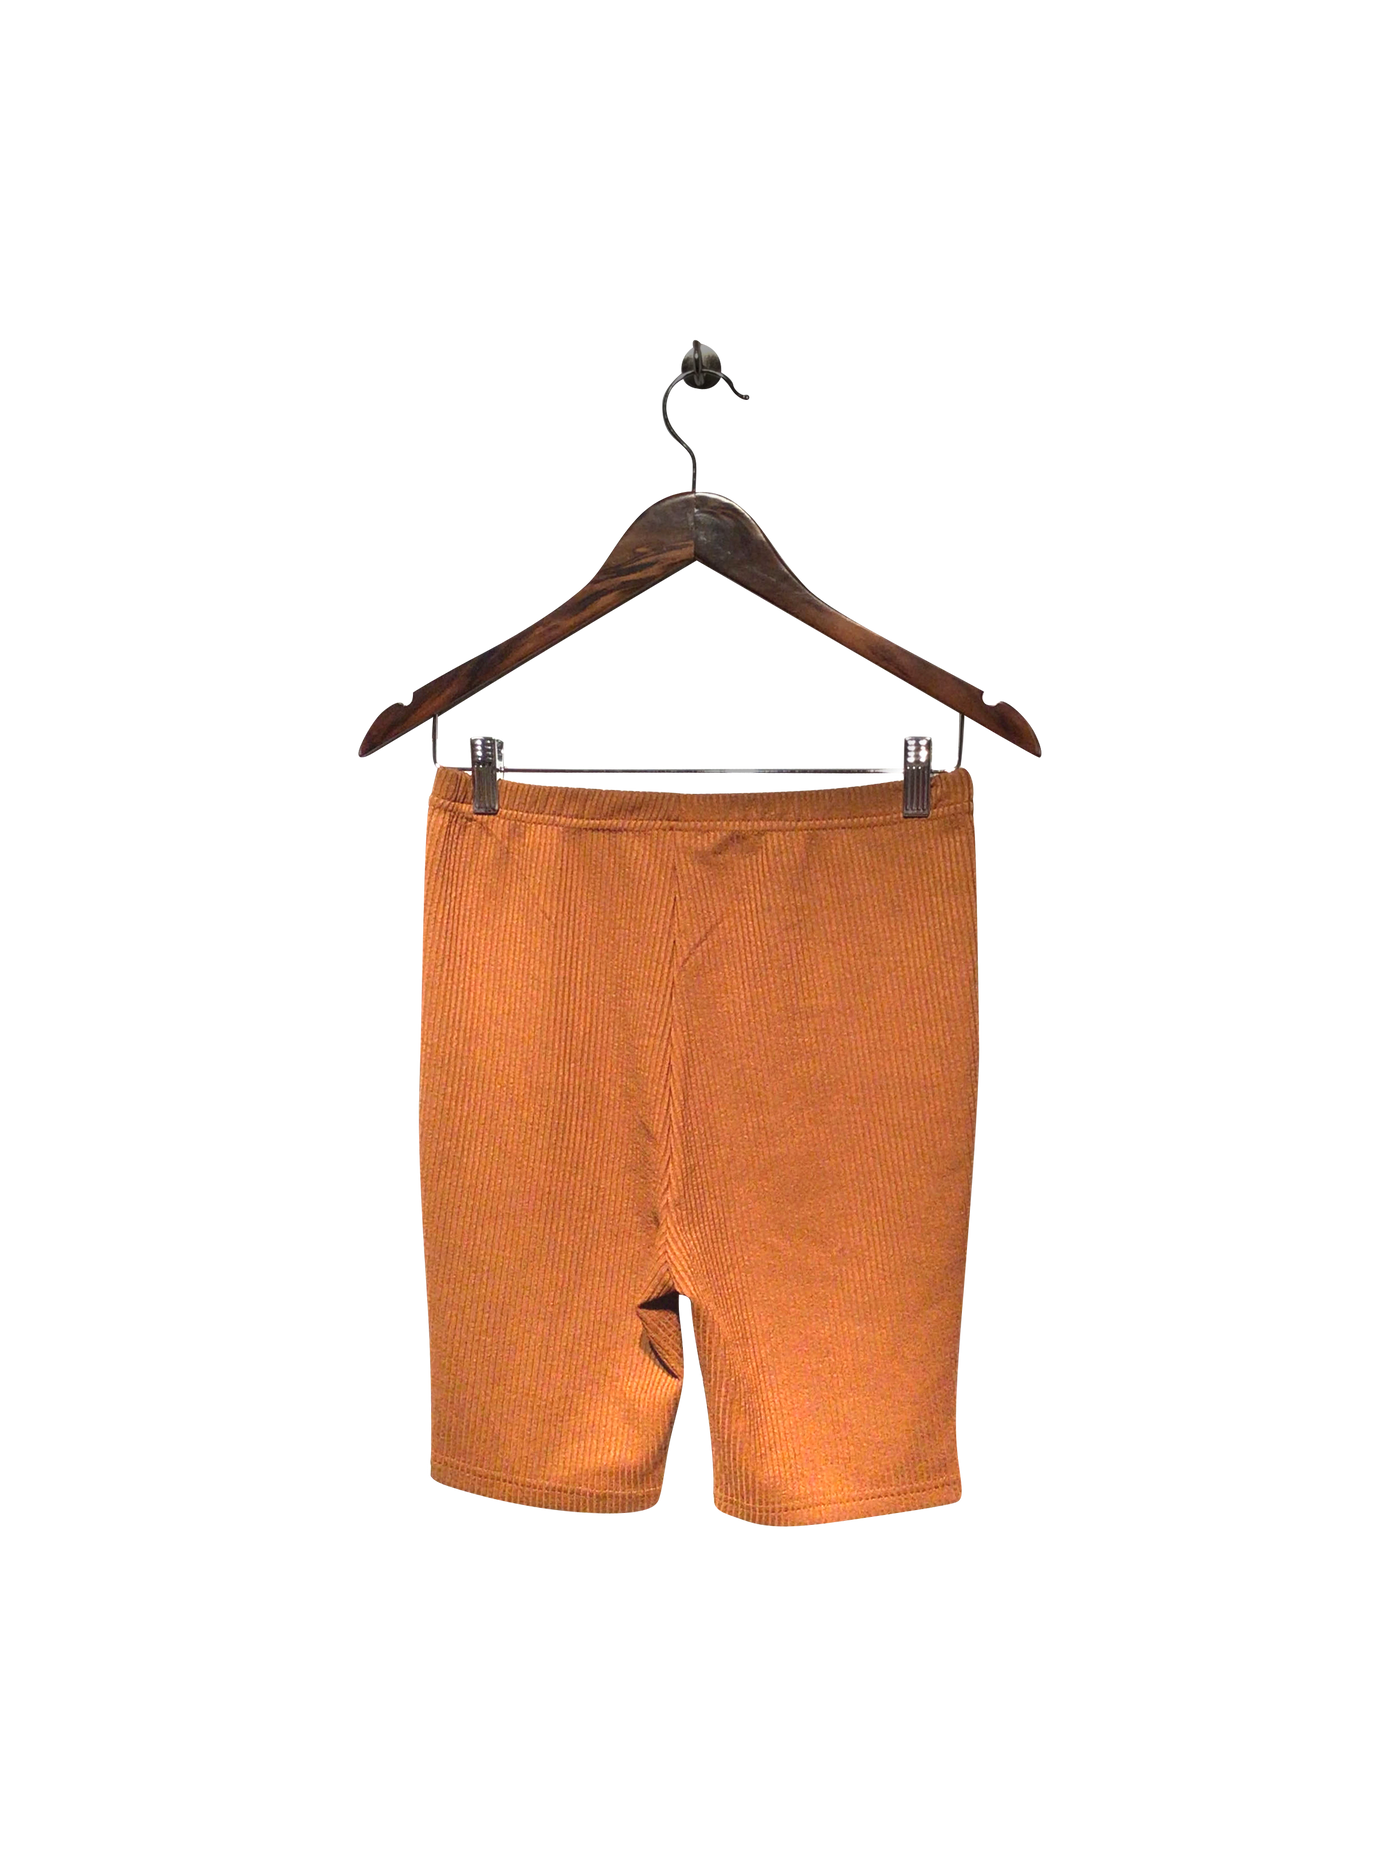 SHEIN Regular fit Pant Shorts in Brown  -  S  5.20 Koop